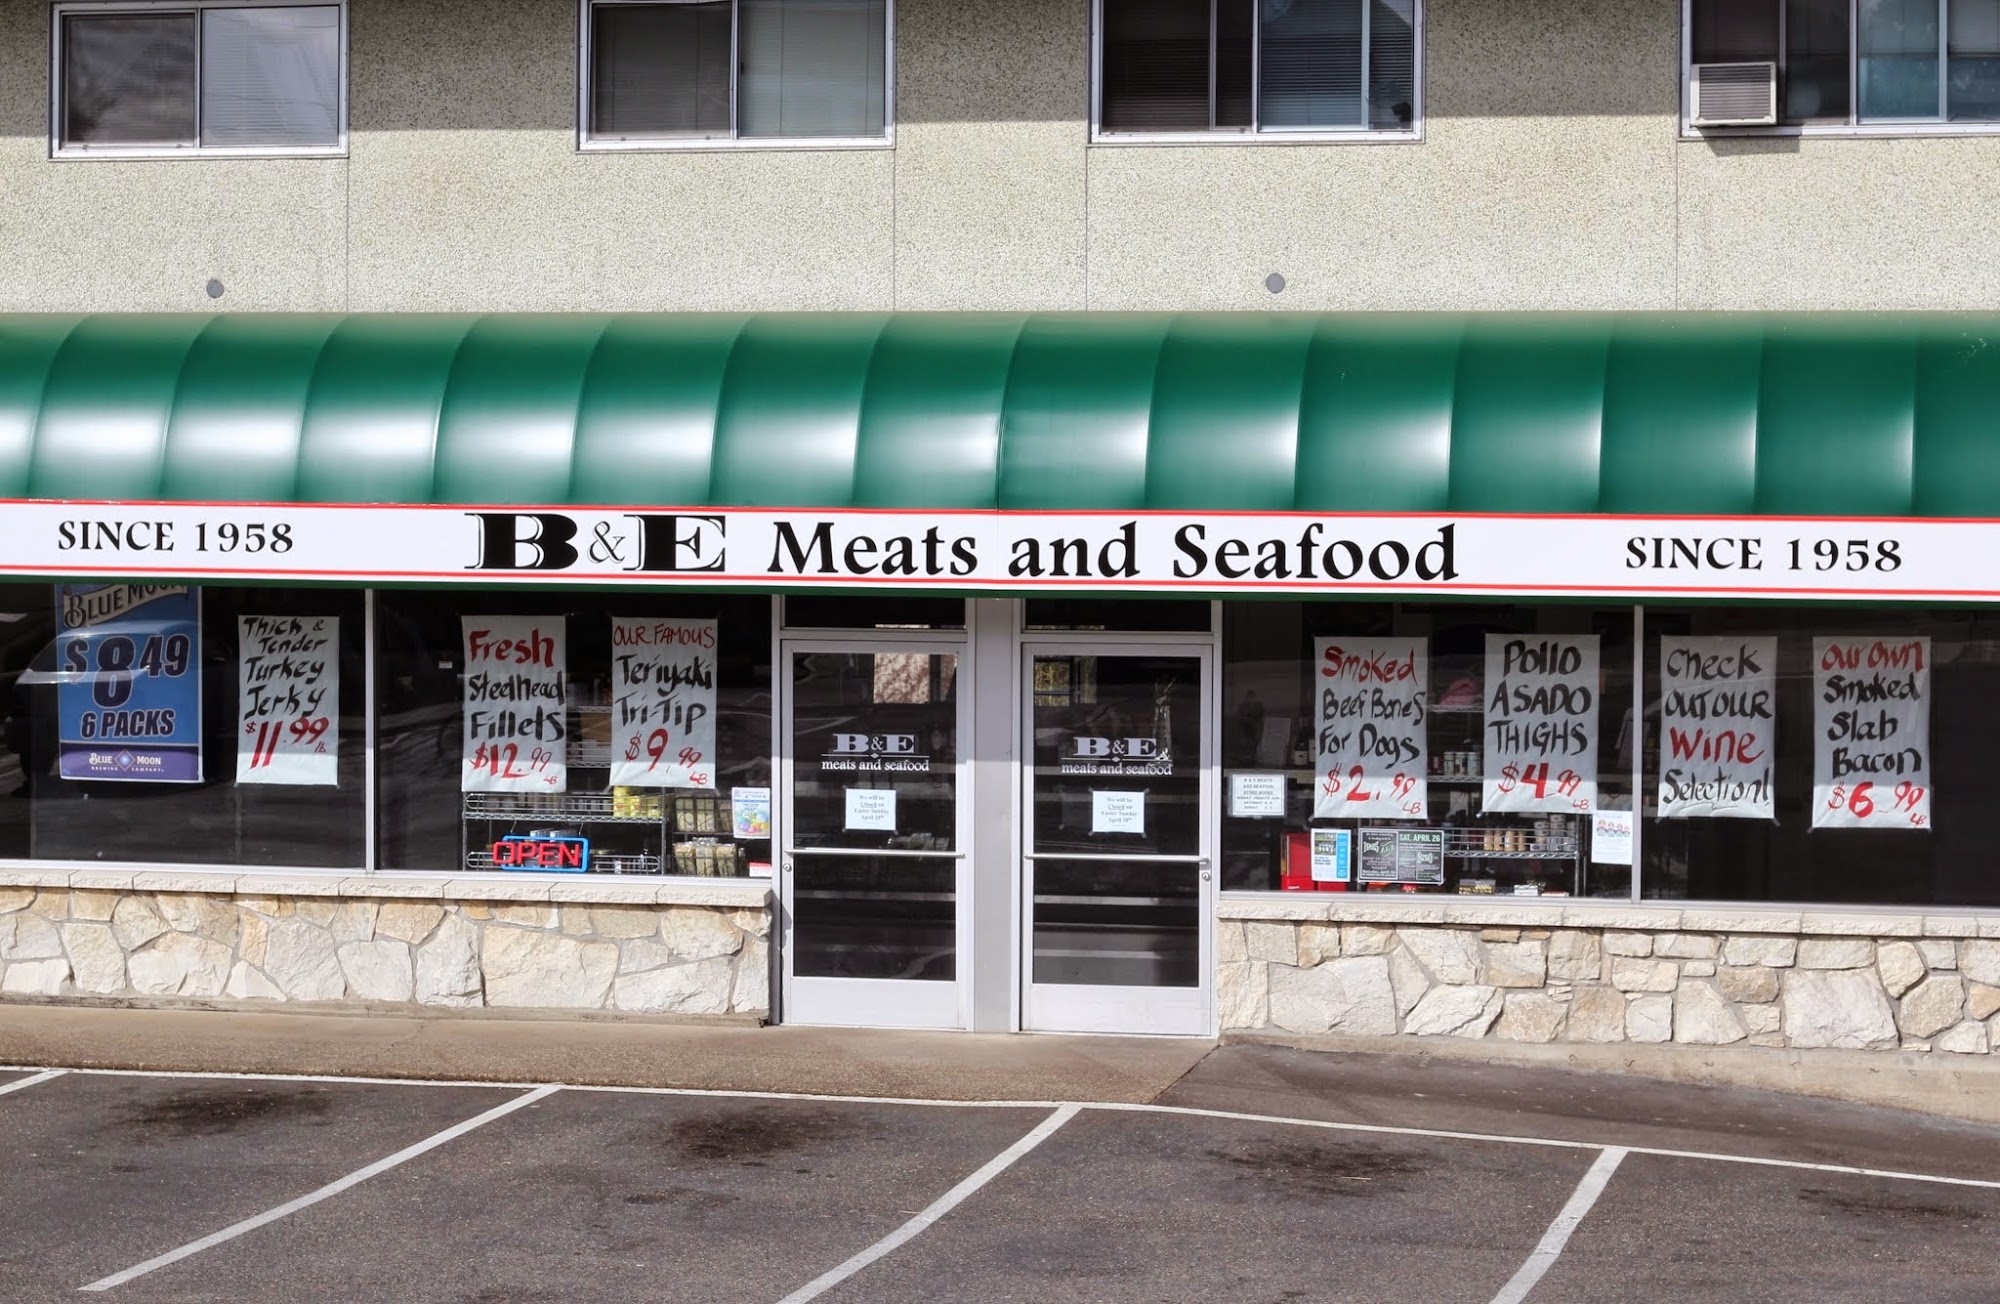 B & E Meats & Seafood